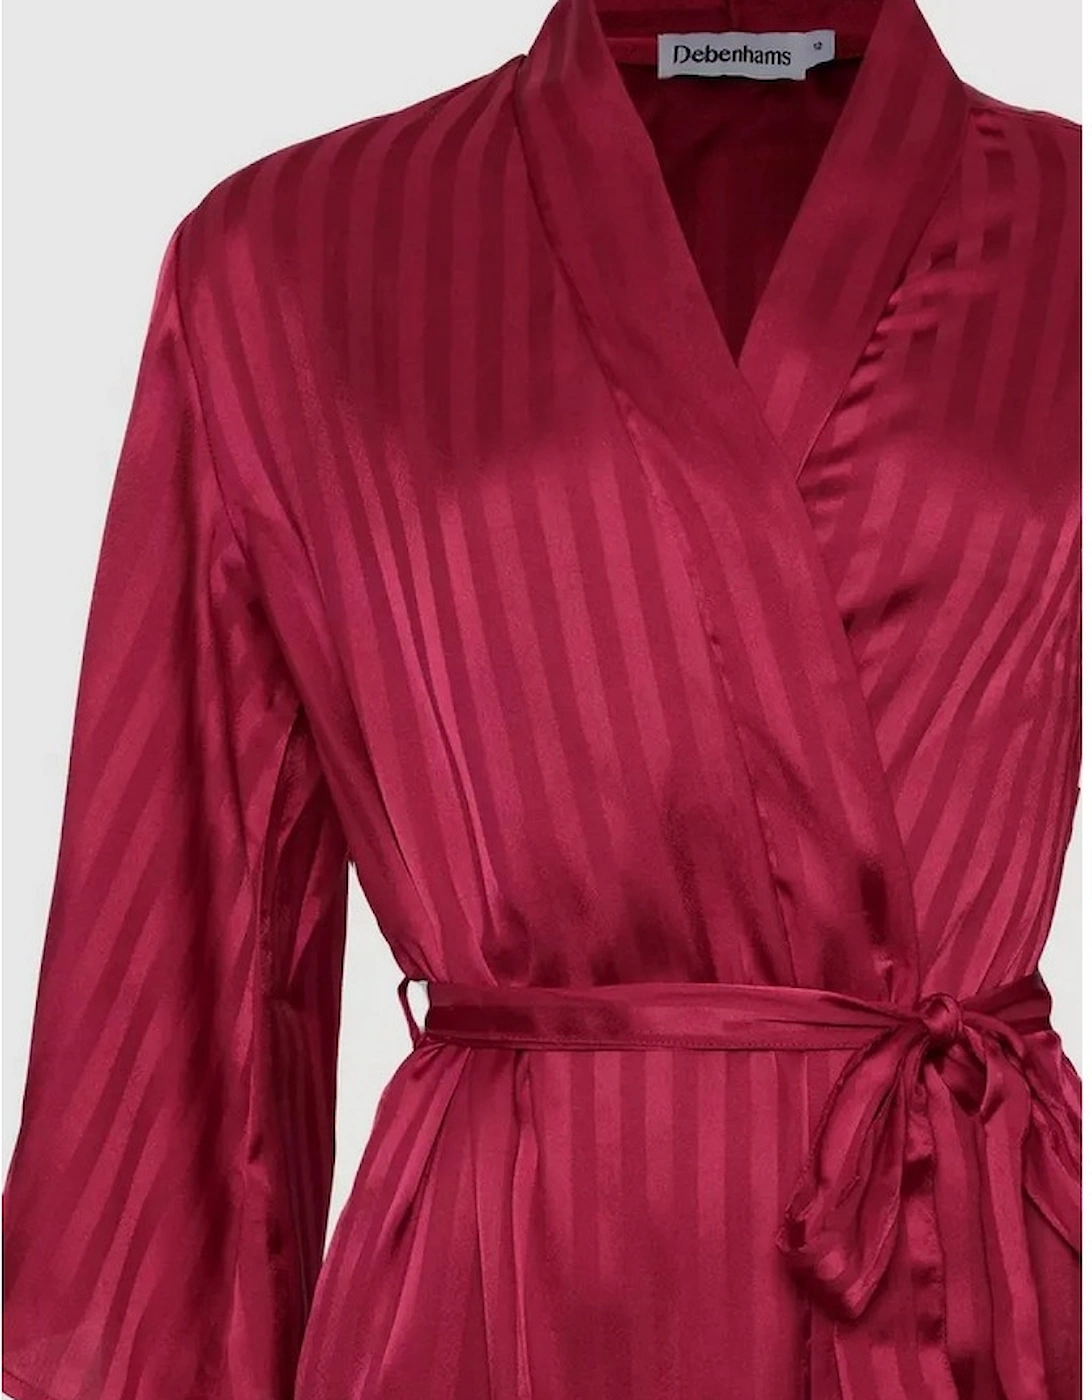 Womens/Ladies Stripe Jacquard Robe